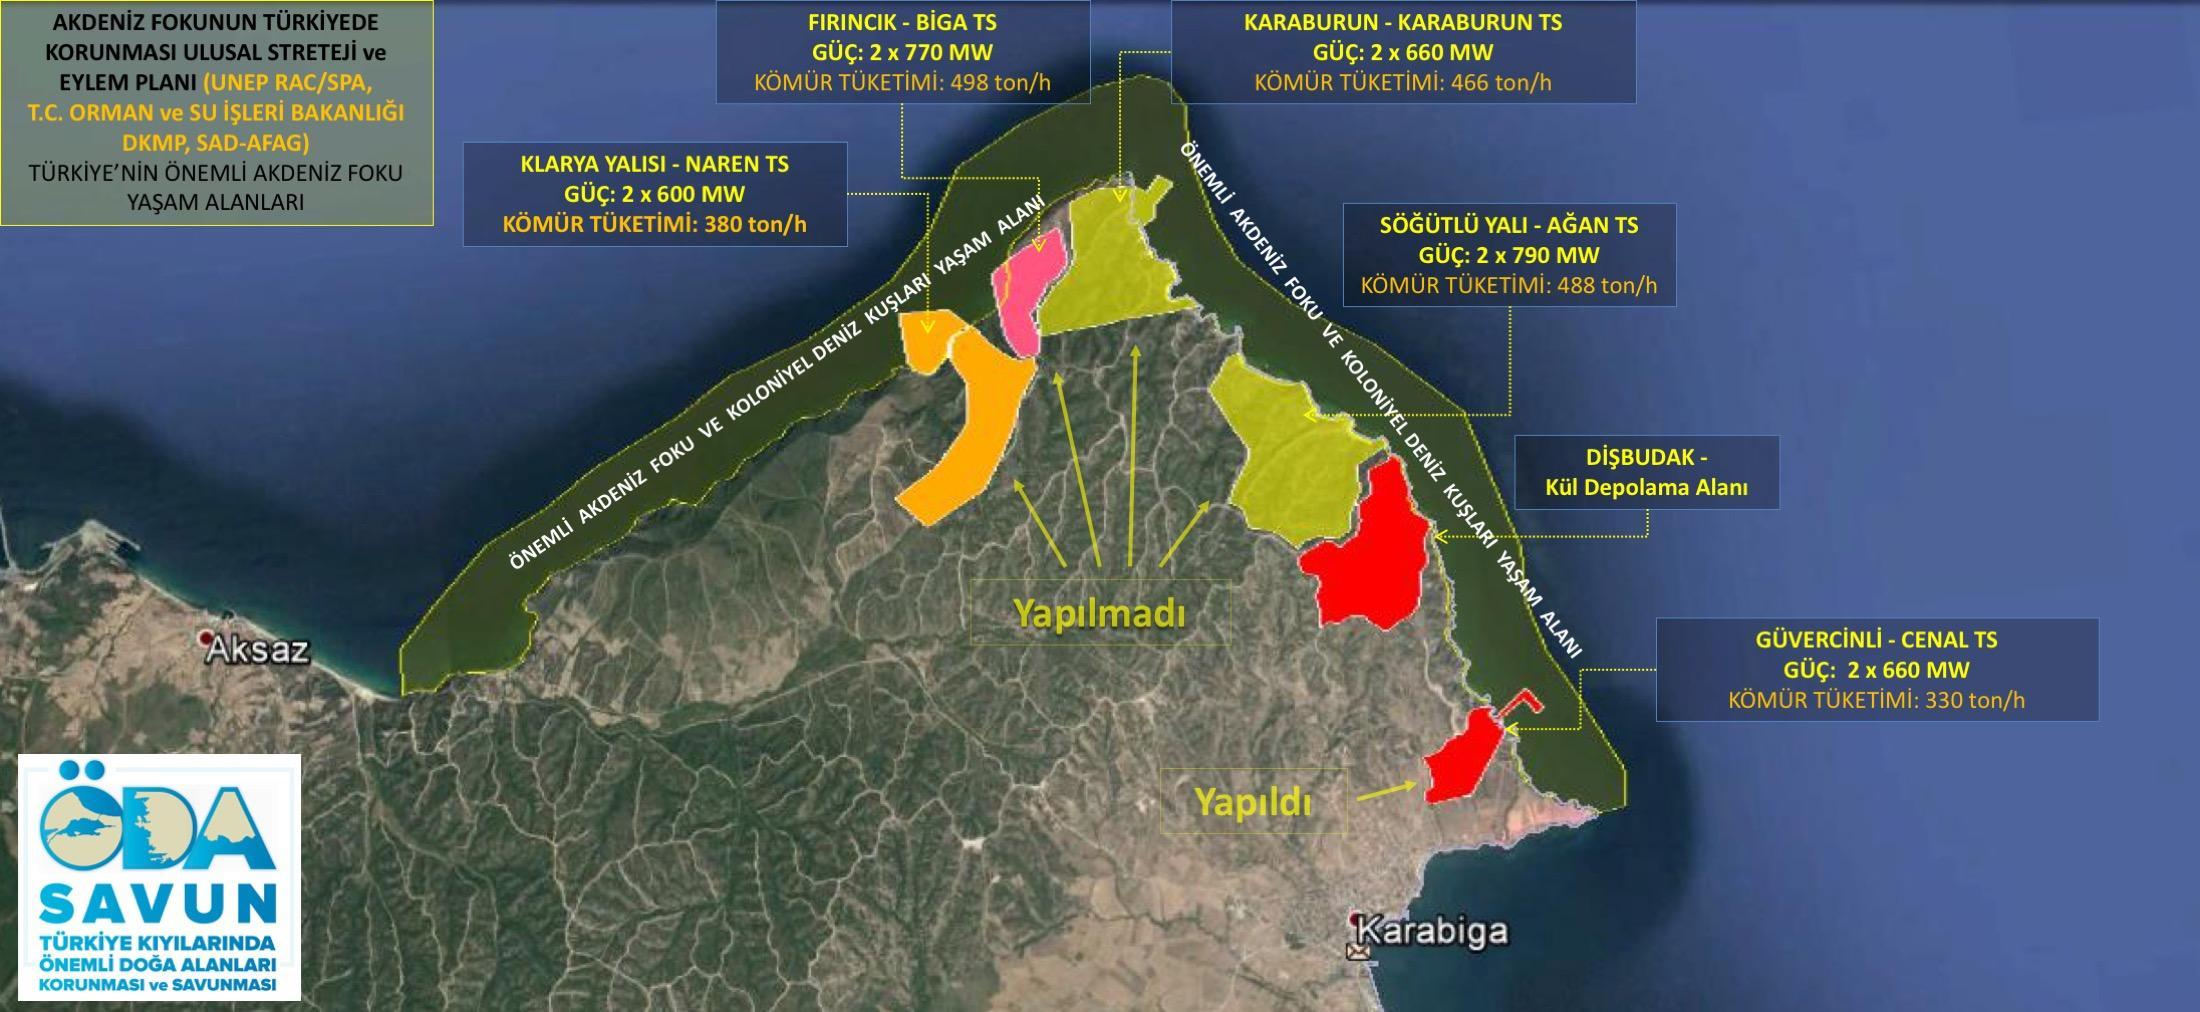 Şekil-13 Marmara Güneybatı kıyılarında yer alan Karabiga kıyılarında gerçkeleşn 1 ve planlı olarak görünen 4 Kömür Termik Enerji Santrali yerlerini gösterir harita.